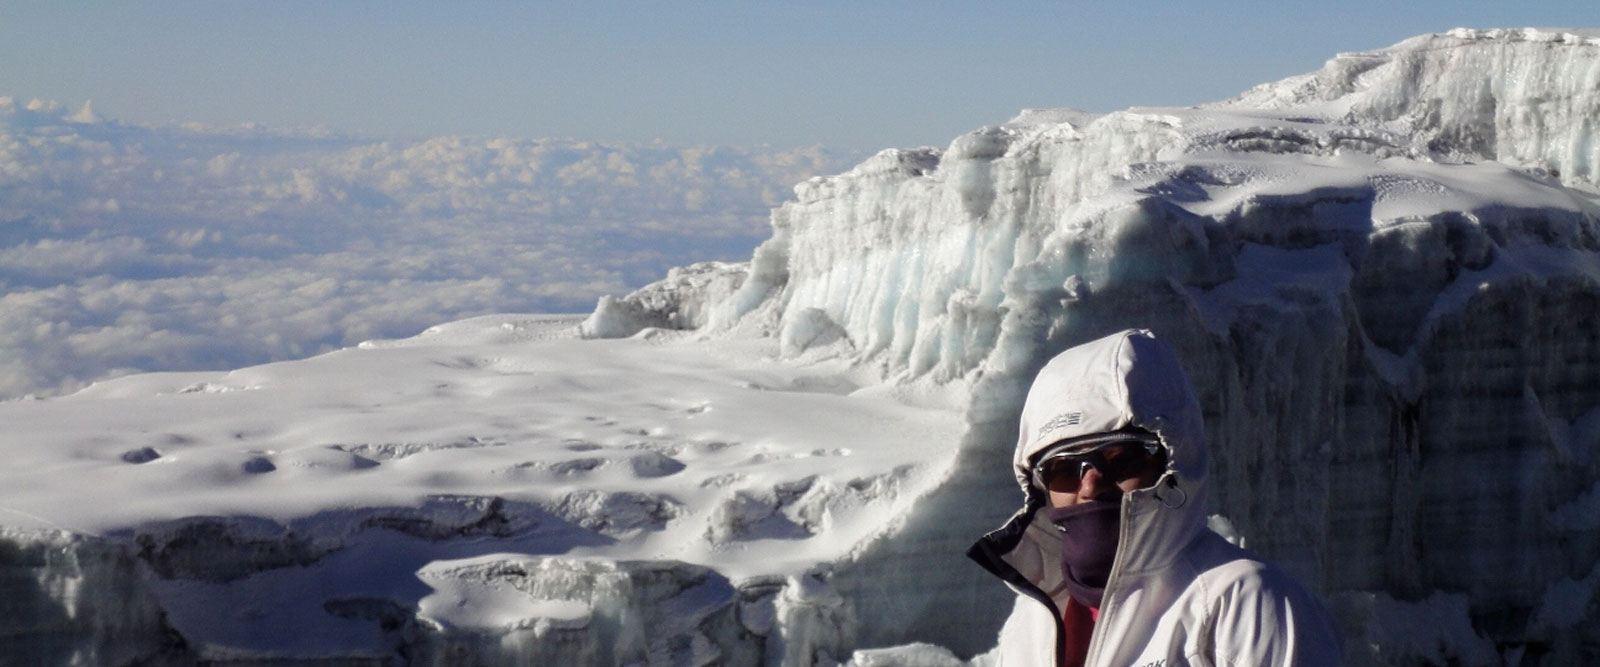 Wafa-N.-Kilimanjaro-Day6-Me-&-Kili-Glaciers-testimonial